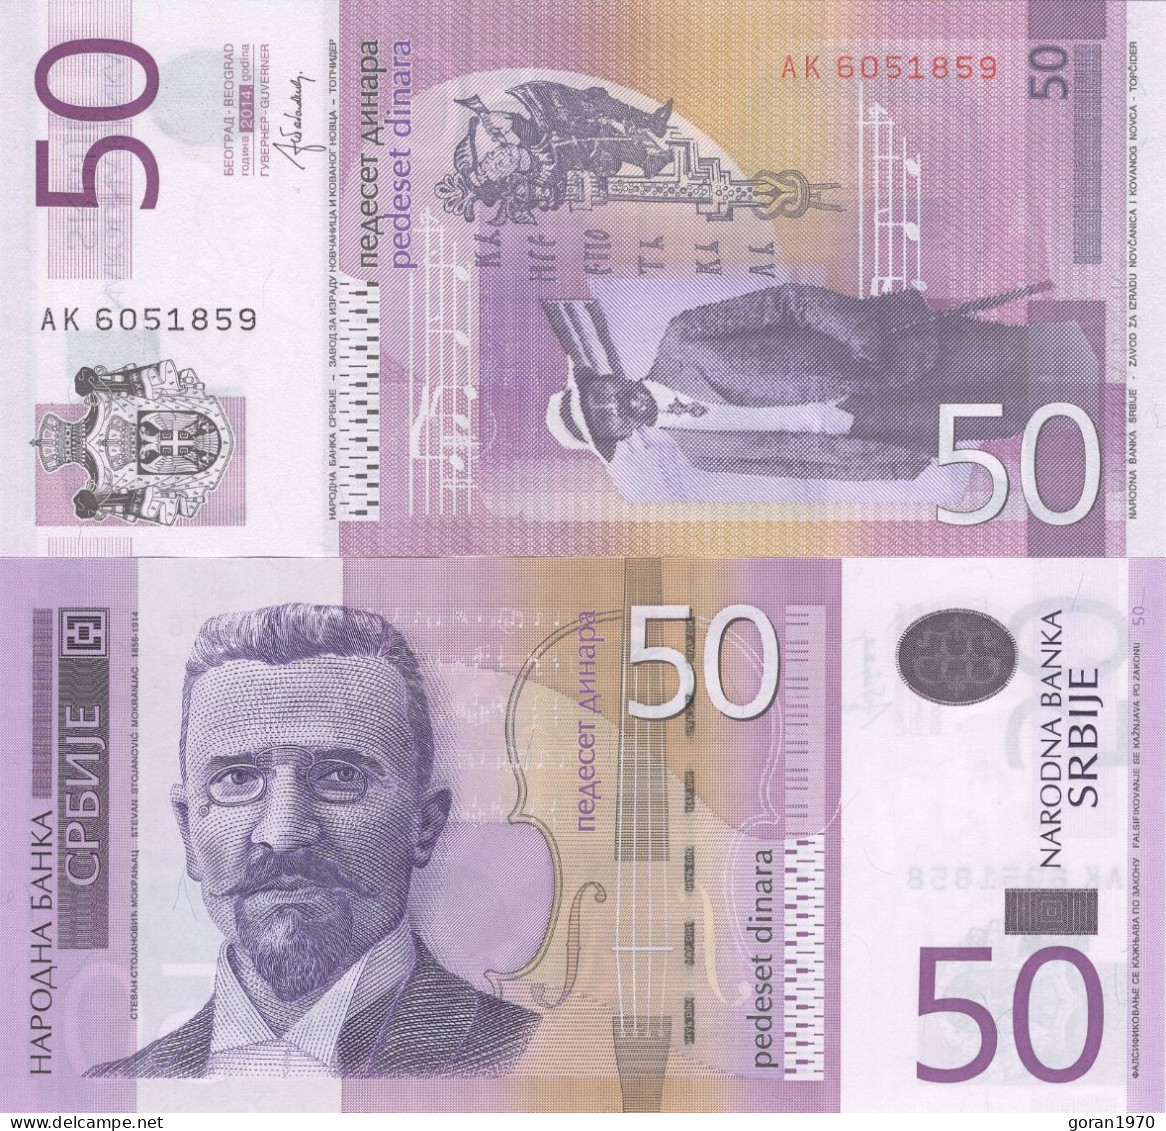 SERBIA 50 Dinara 2014 UNC, Prefix AK - Serbie